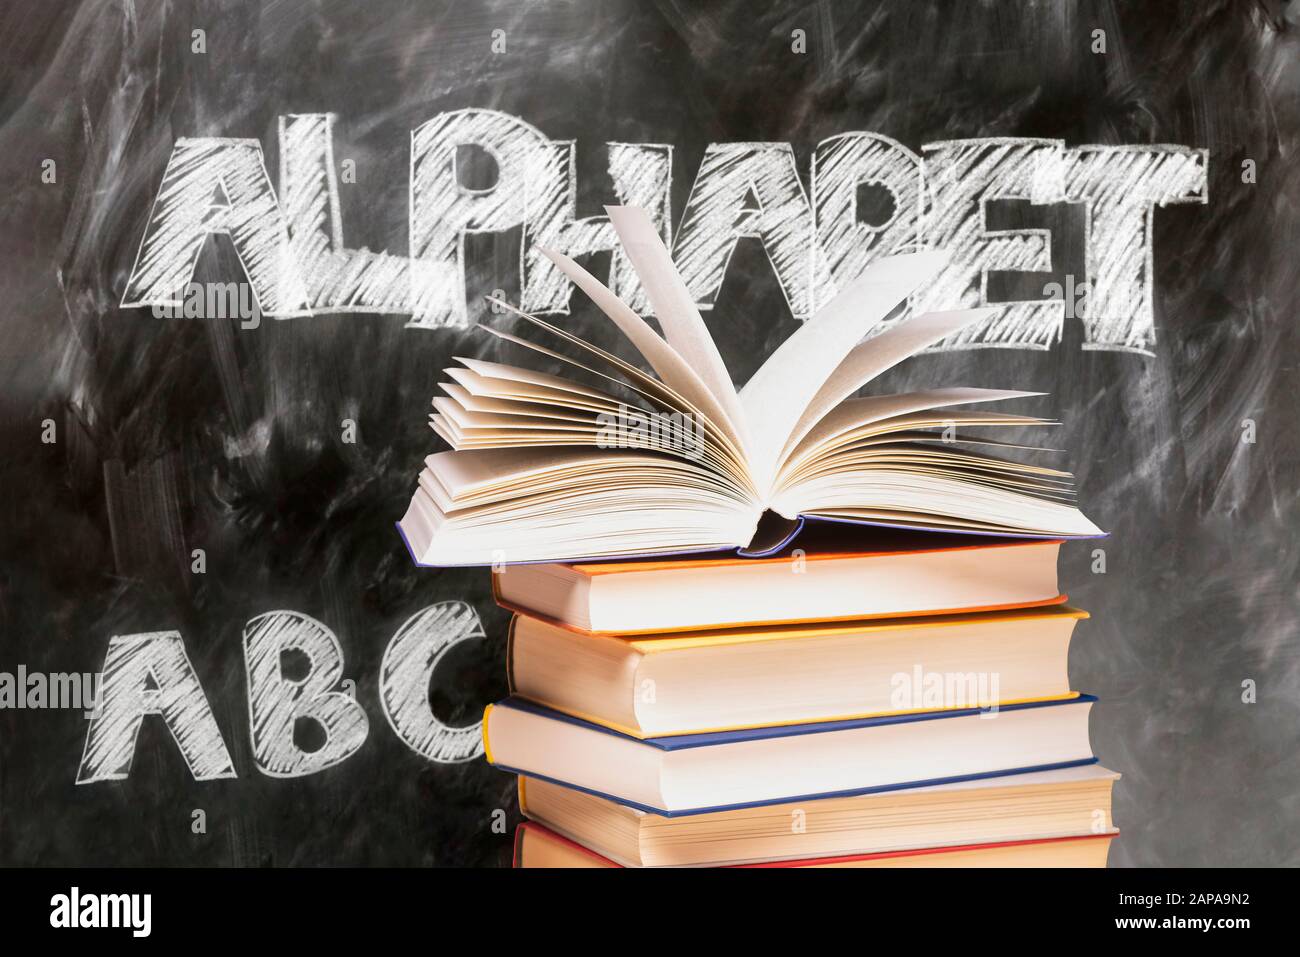 Buch auf einem Stapel vor einer Tafel mit den Wörtern Alphabet und ABC geöffnet Stockfoto